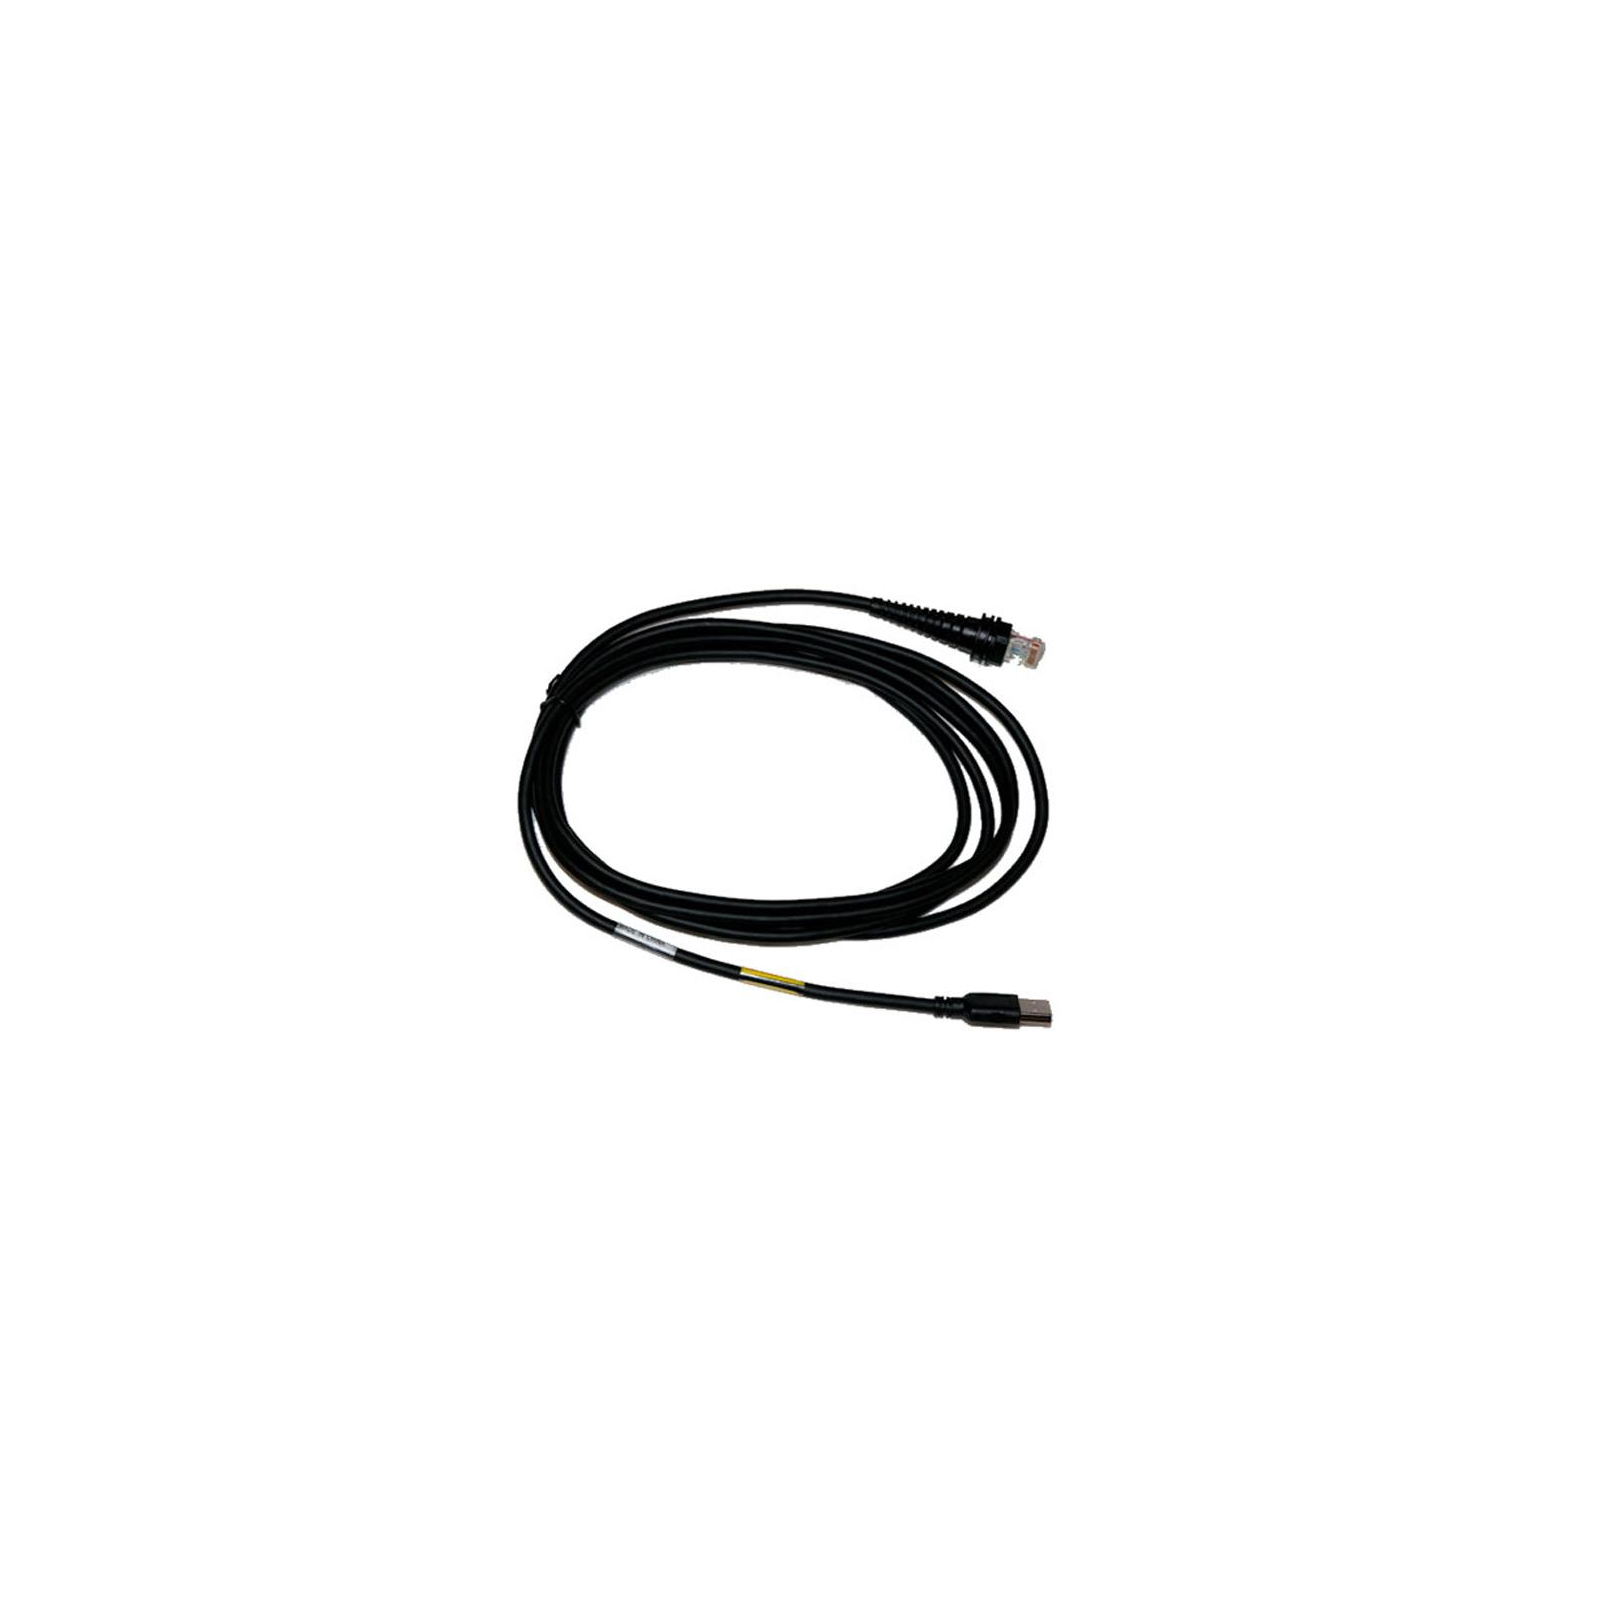 Интерфейсный кабель Honeywell USB Type A HSM 5V 1.5m (CBL-500-150-S00) изображение 2